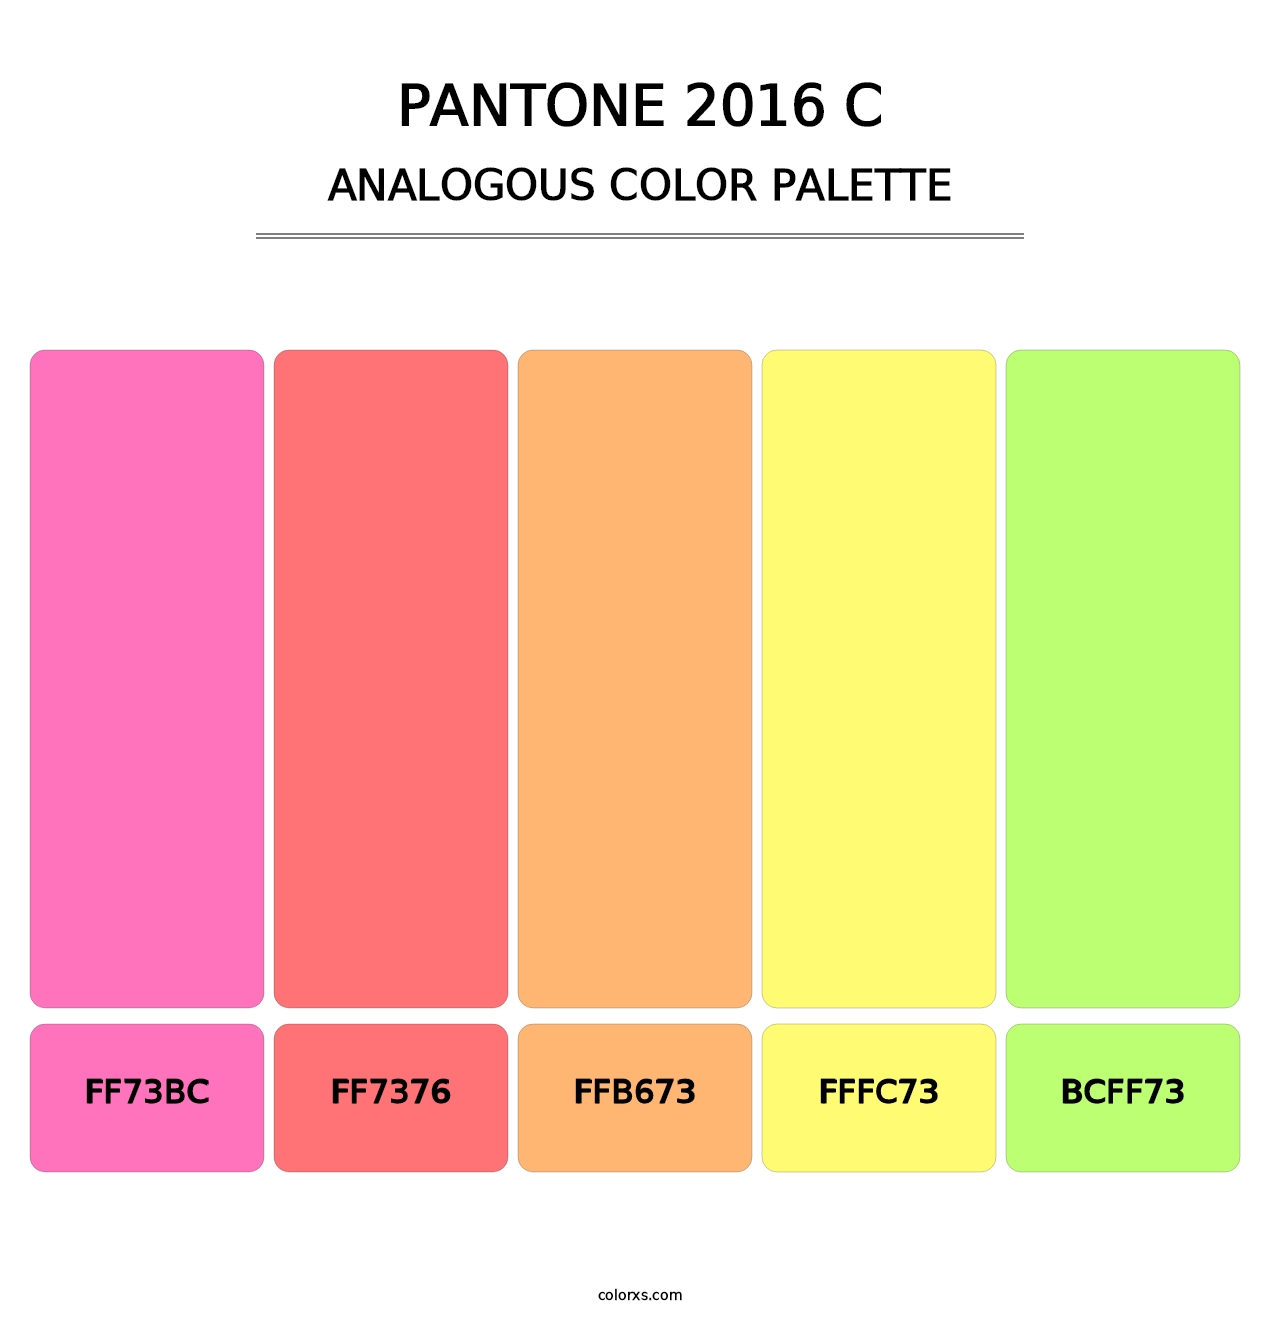 PANTONE 2016 C - Analogous Color Palette